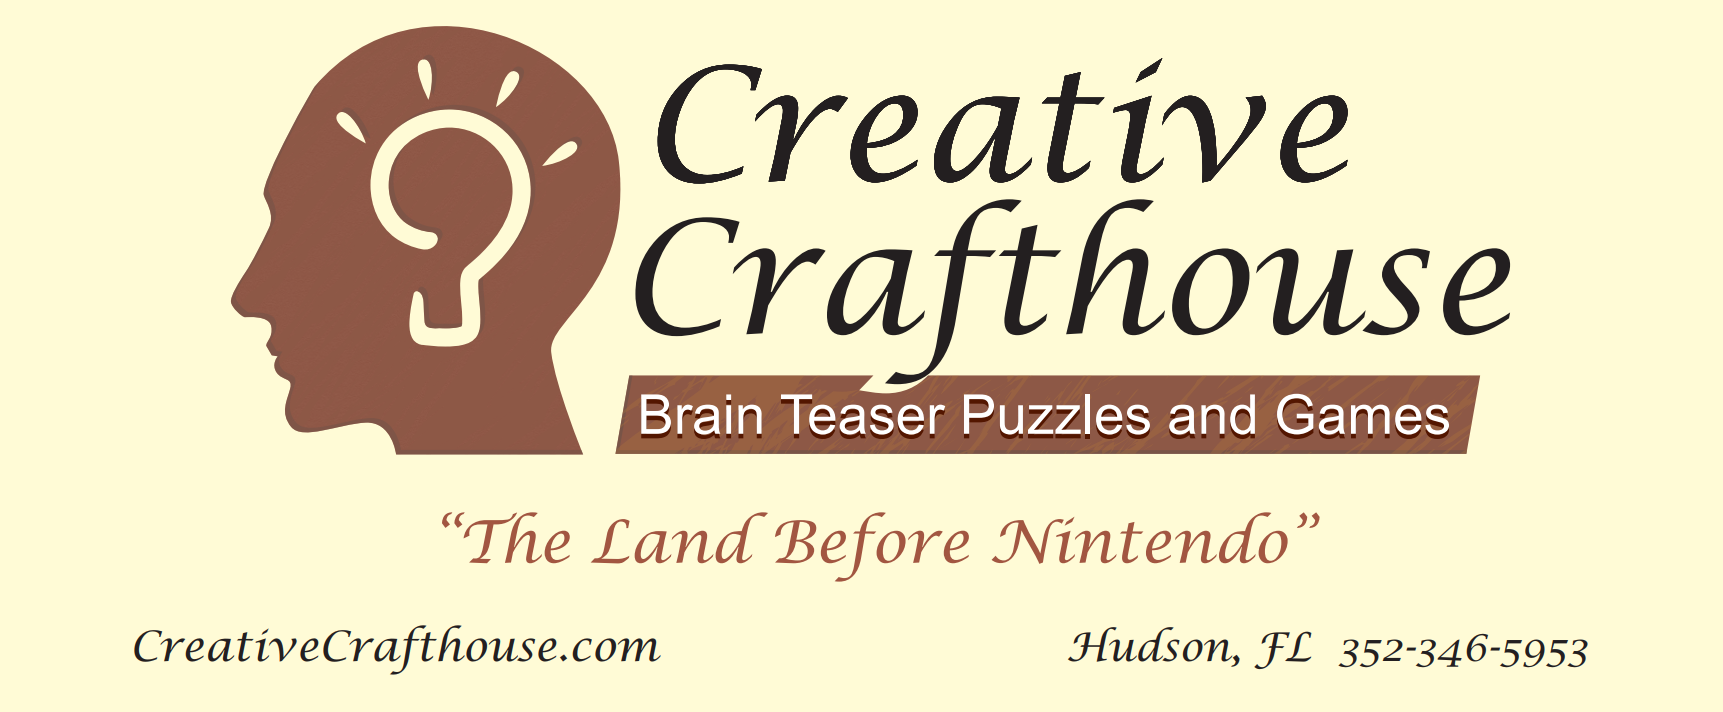 creativity brain teasers